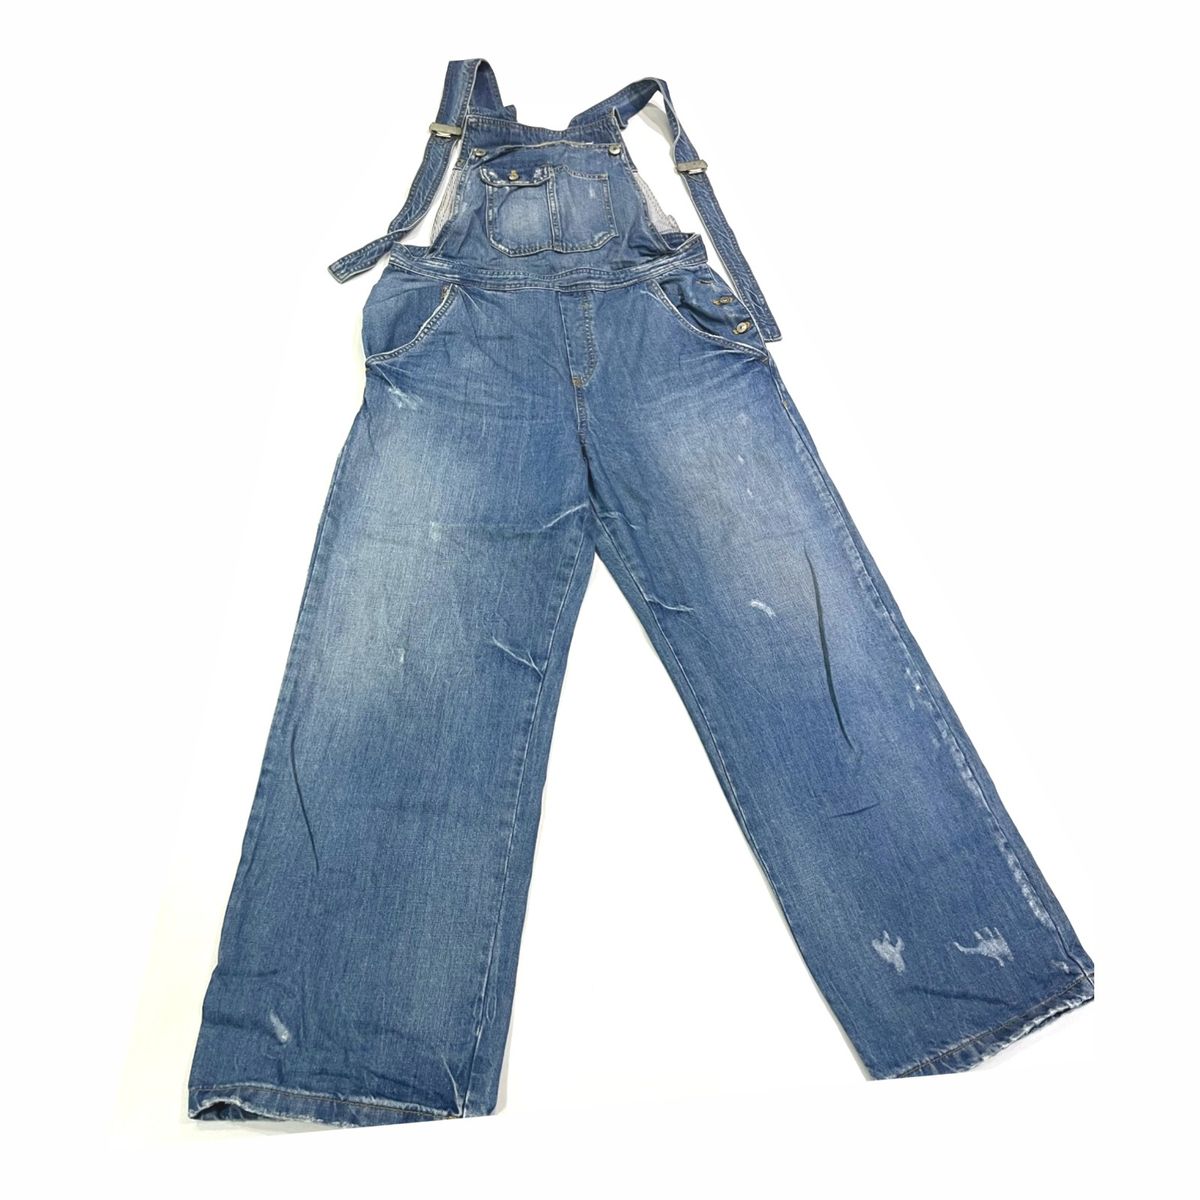 Denim macacão jeans feminino cintura alta vintage macacão jeans